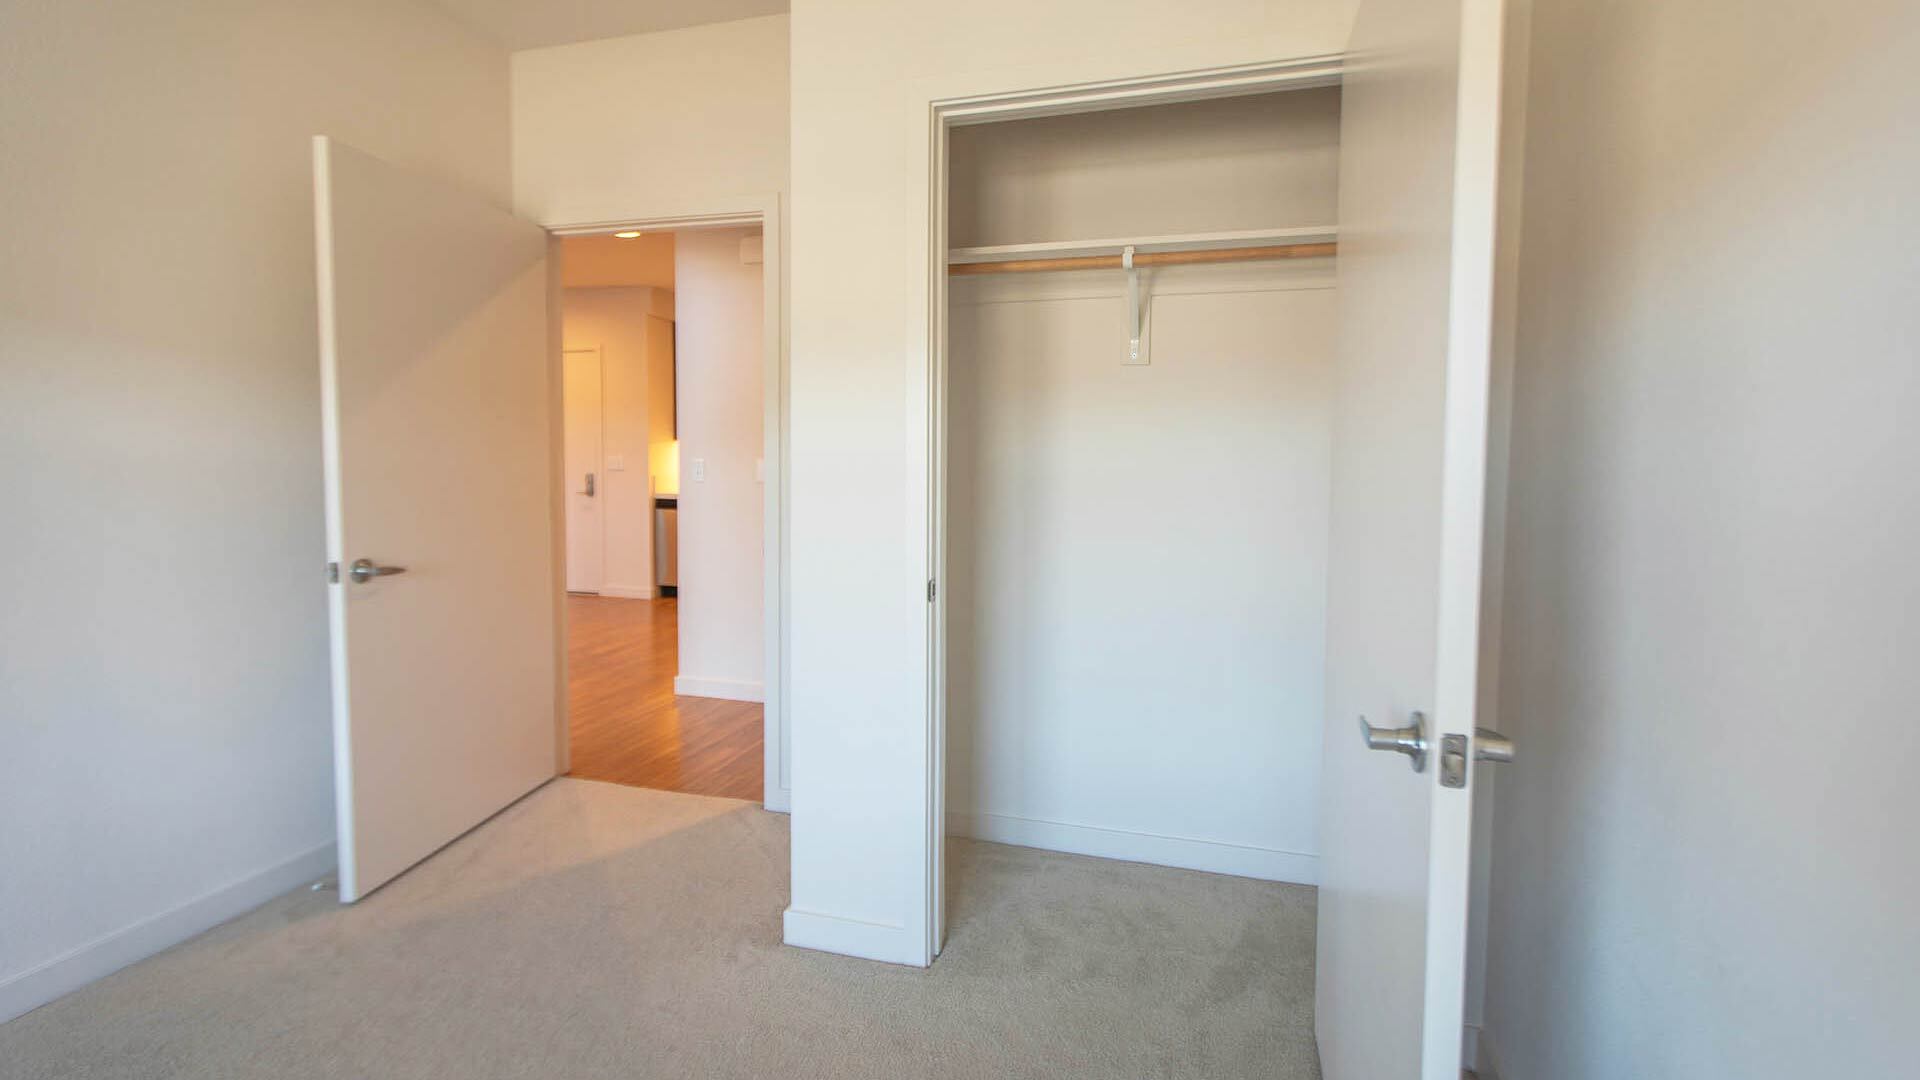 Aperture D1 floorplan bedroom closet view 1